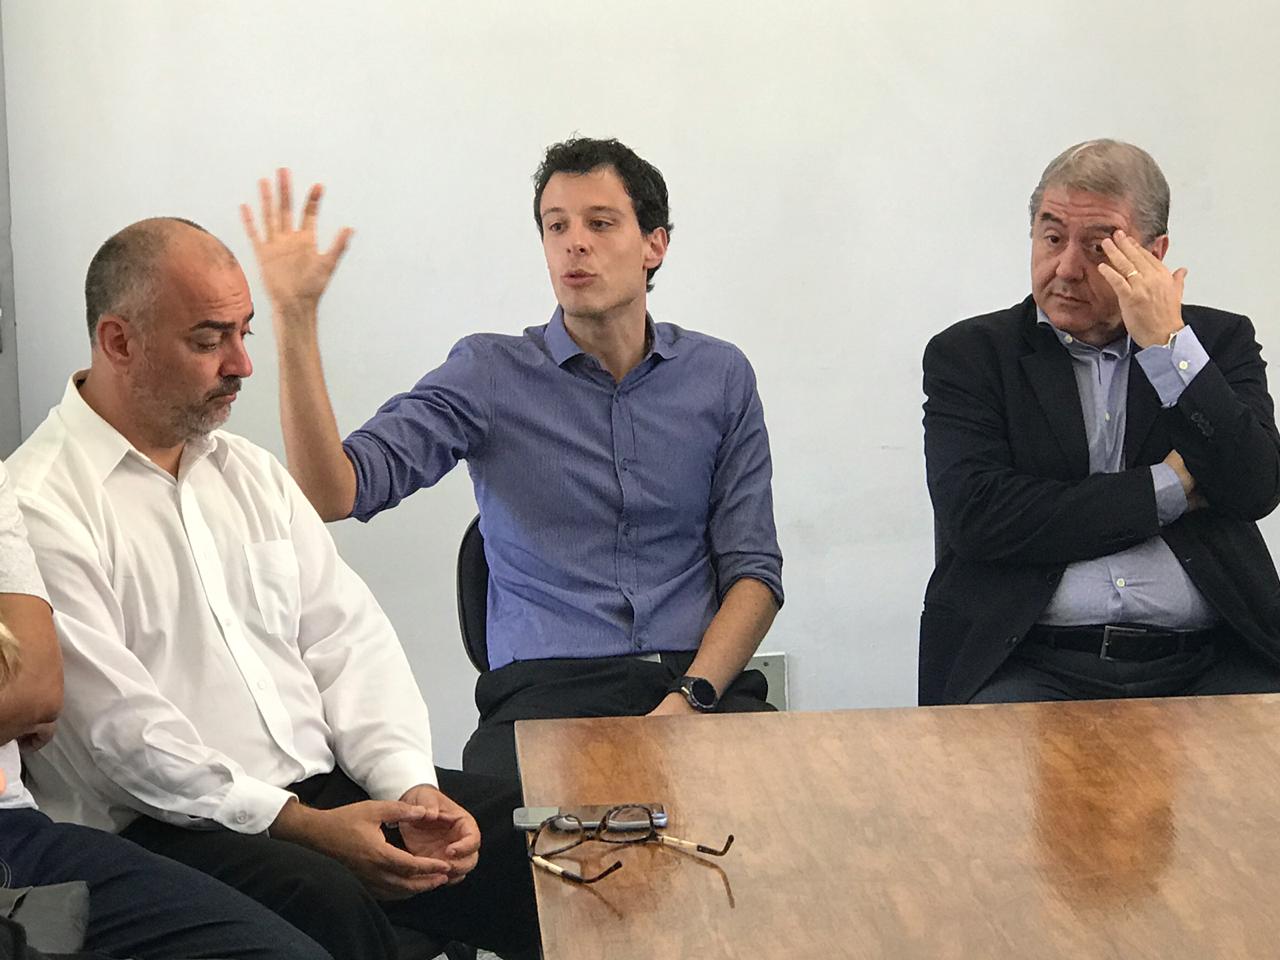 Três homens e um deles falando com uma das mãos levantadas em sinal de expressão da sua fala 